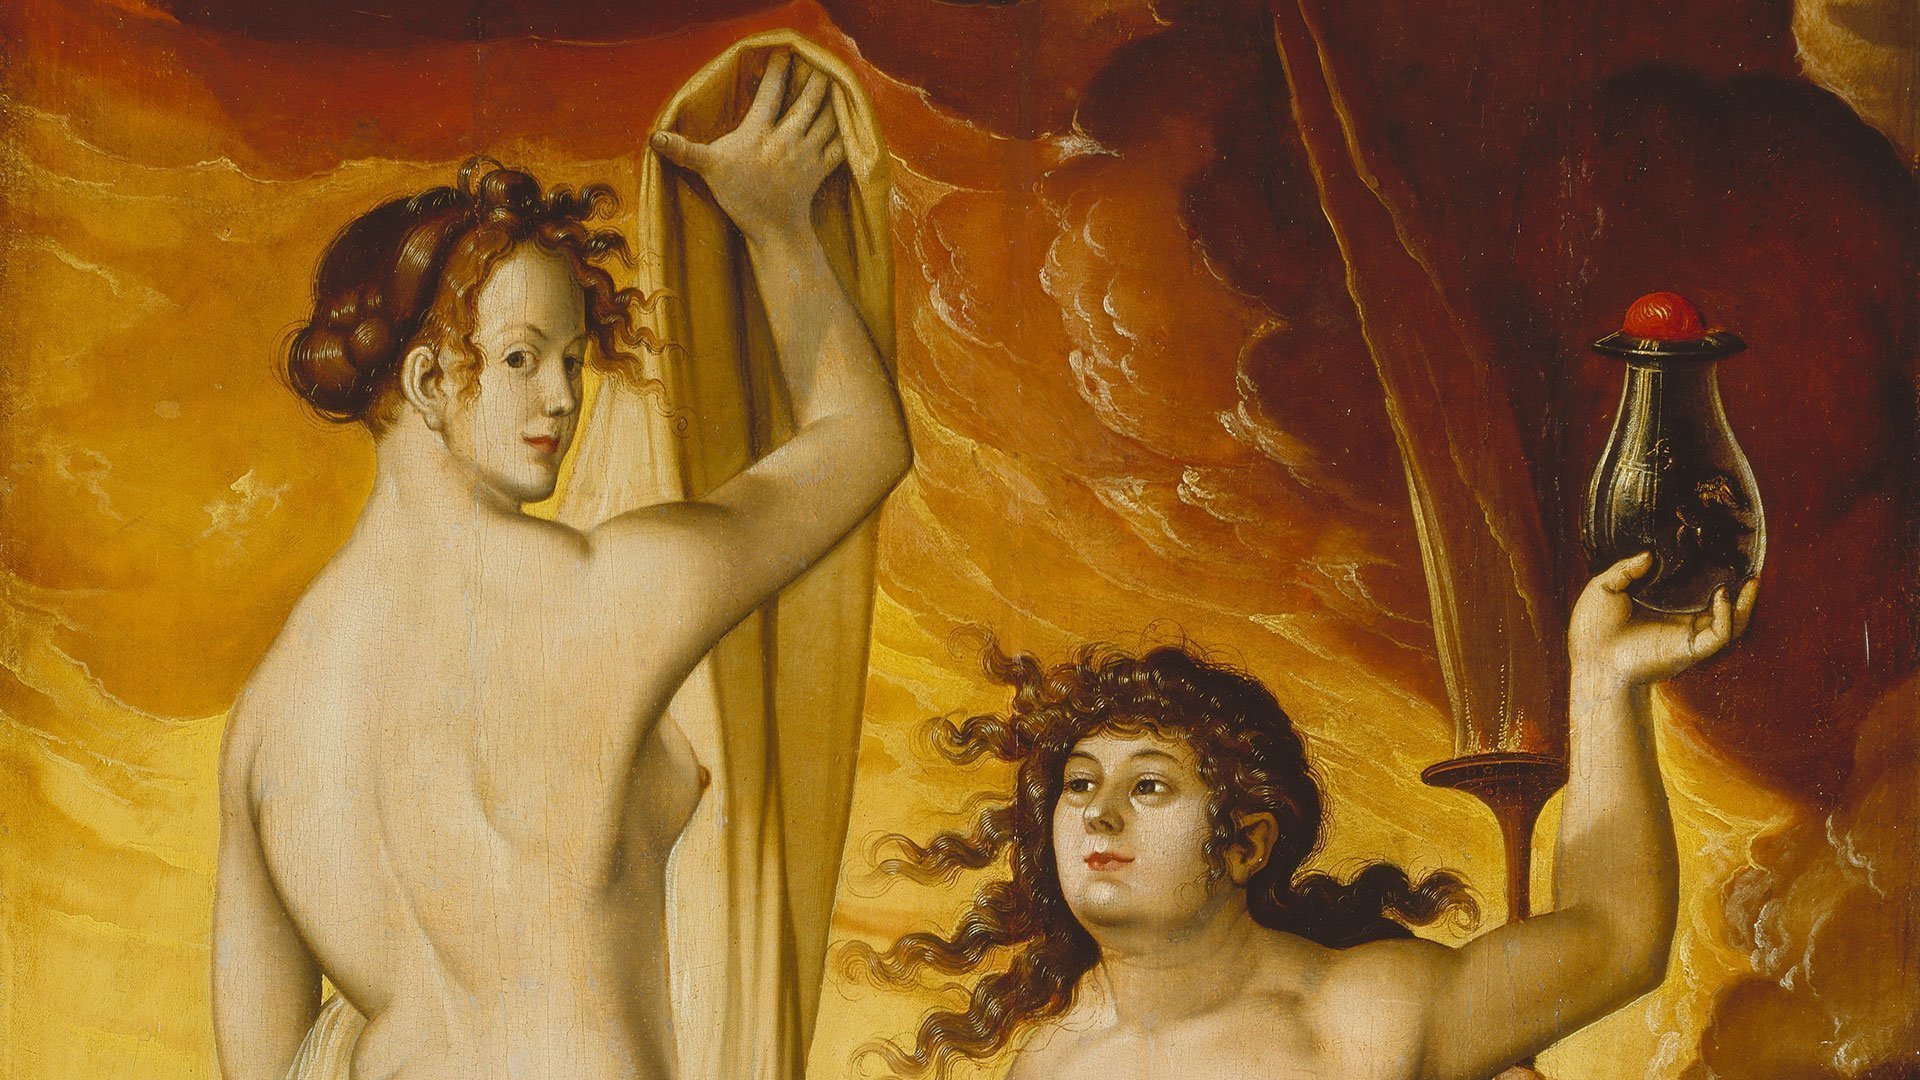 Abbildung des Werks "Zwei Hexen" des Künstlers Hans Baldung Grien. Es zeigt zwei nackte Frauen vor einem orangnen Hintergrund.